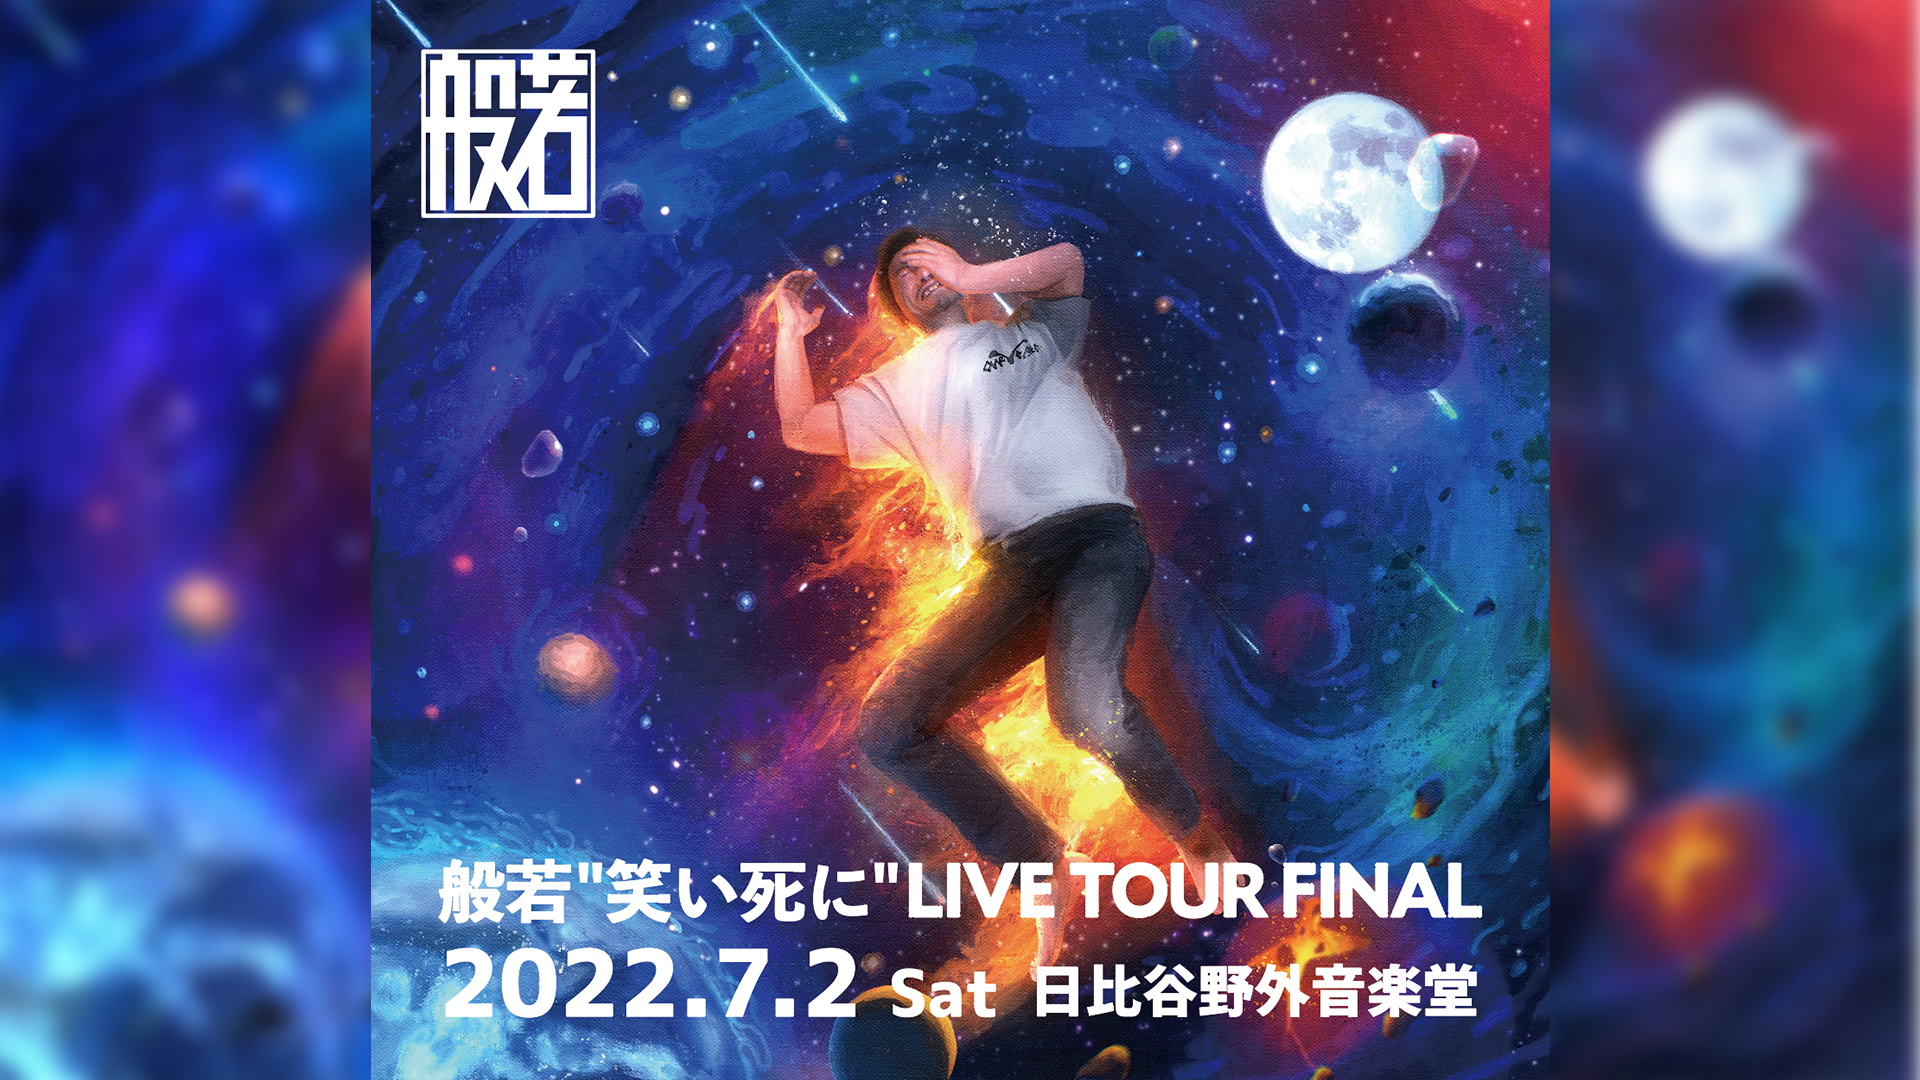 般若 "笑い死に" LIVE TOUR FINAL @日比谷公園大音楽堂 開催決定!!!